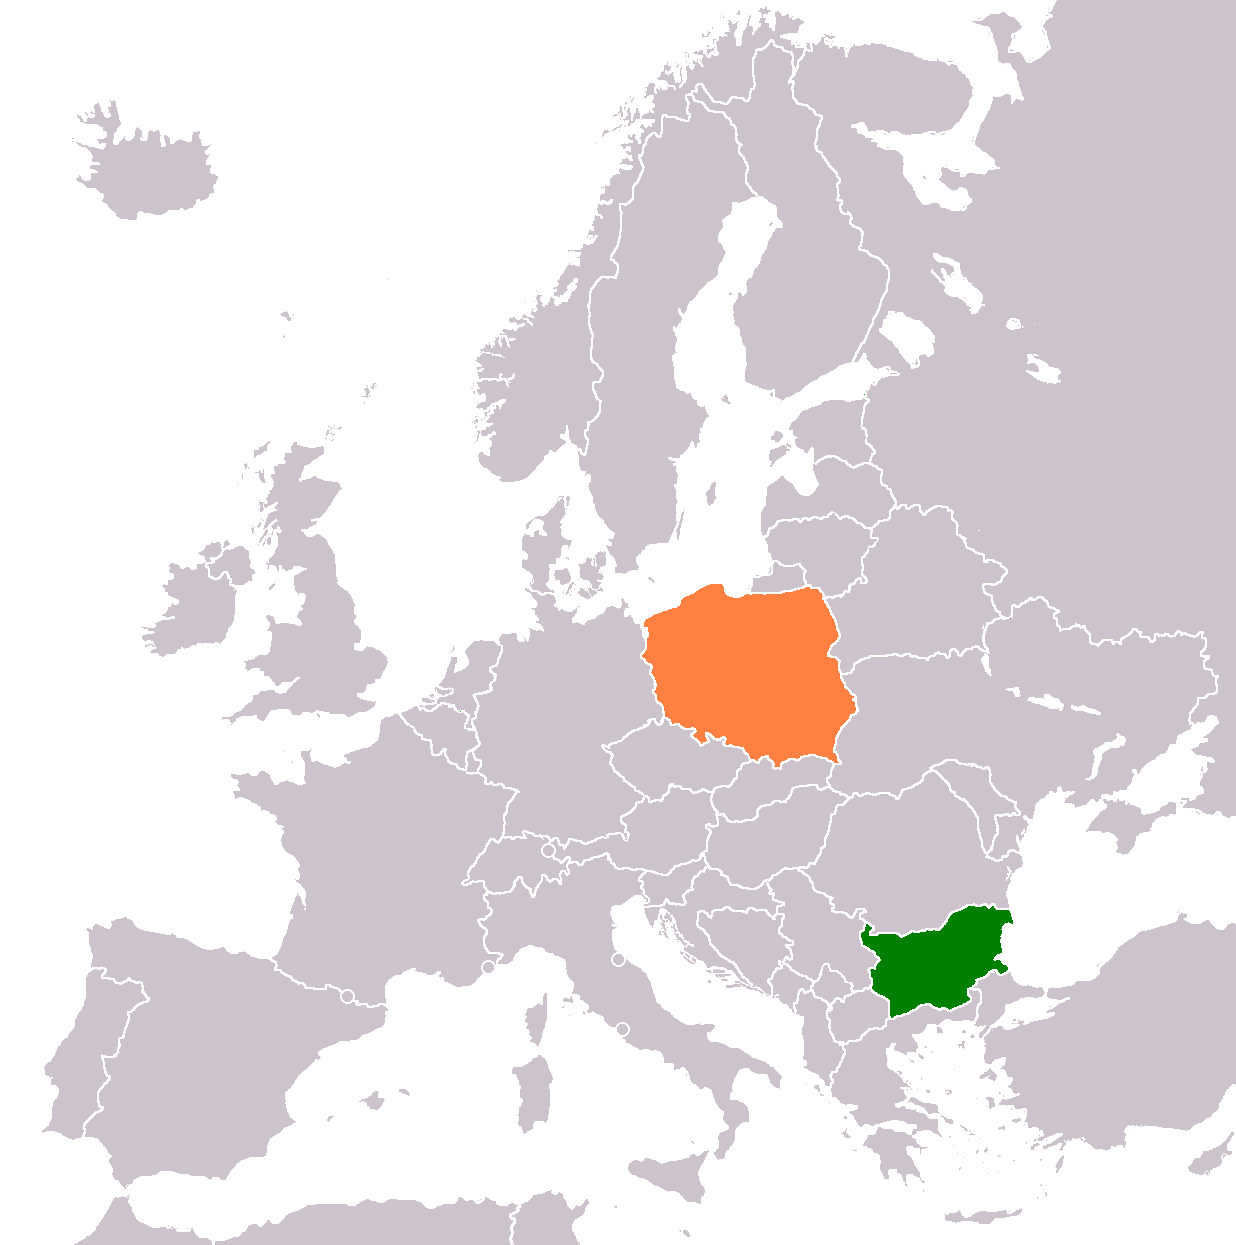 Co-obrachadh Pòlach-Bulgàiria